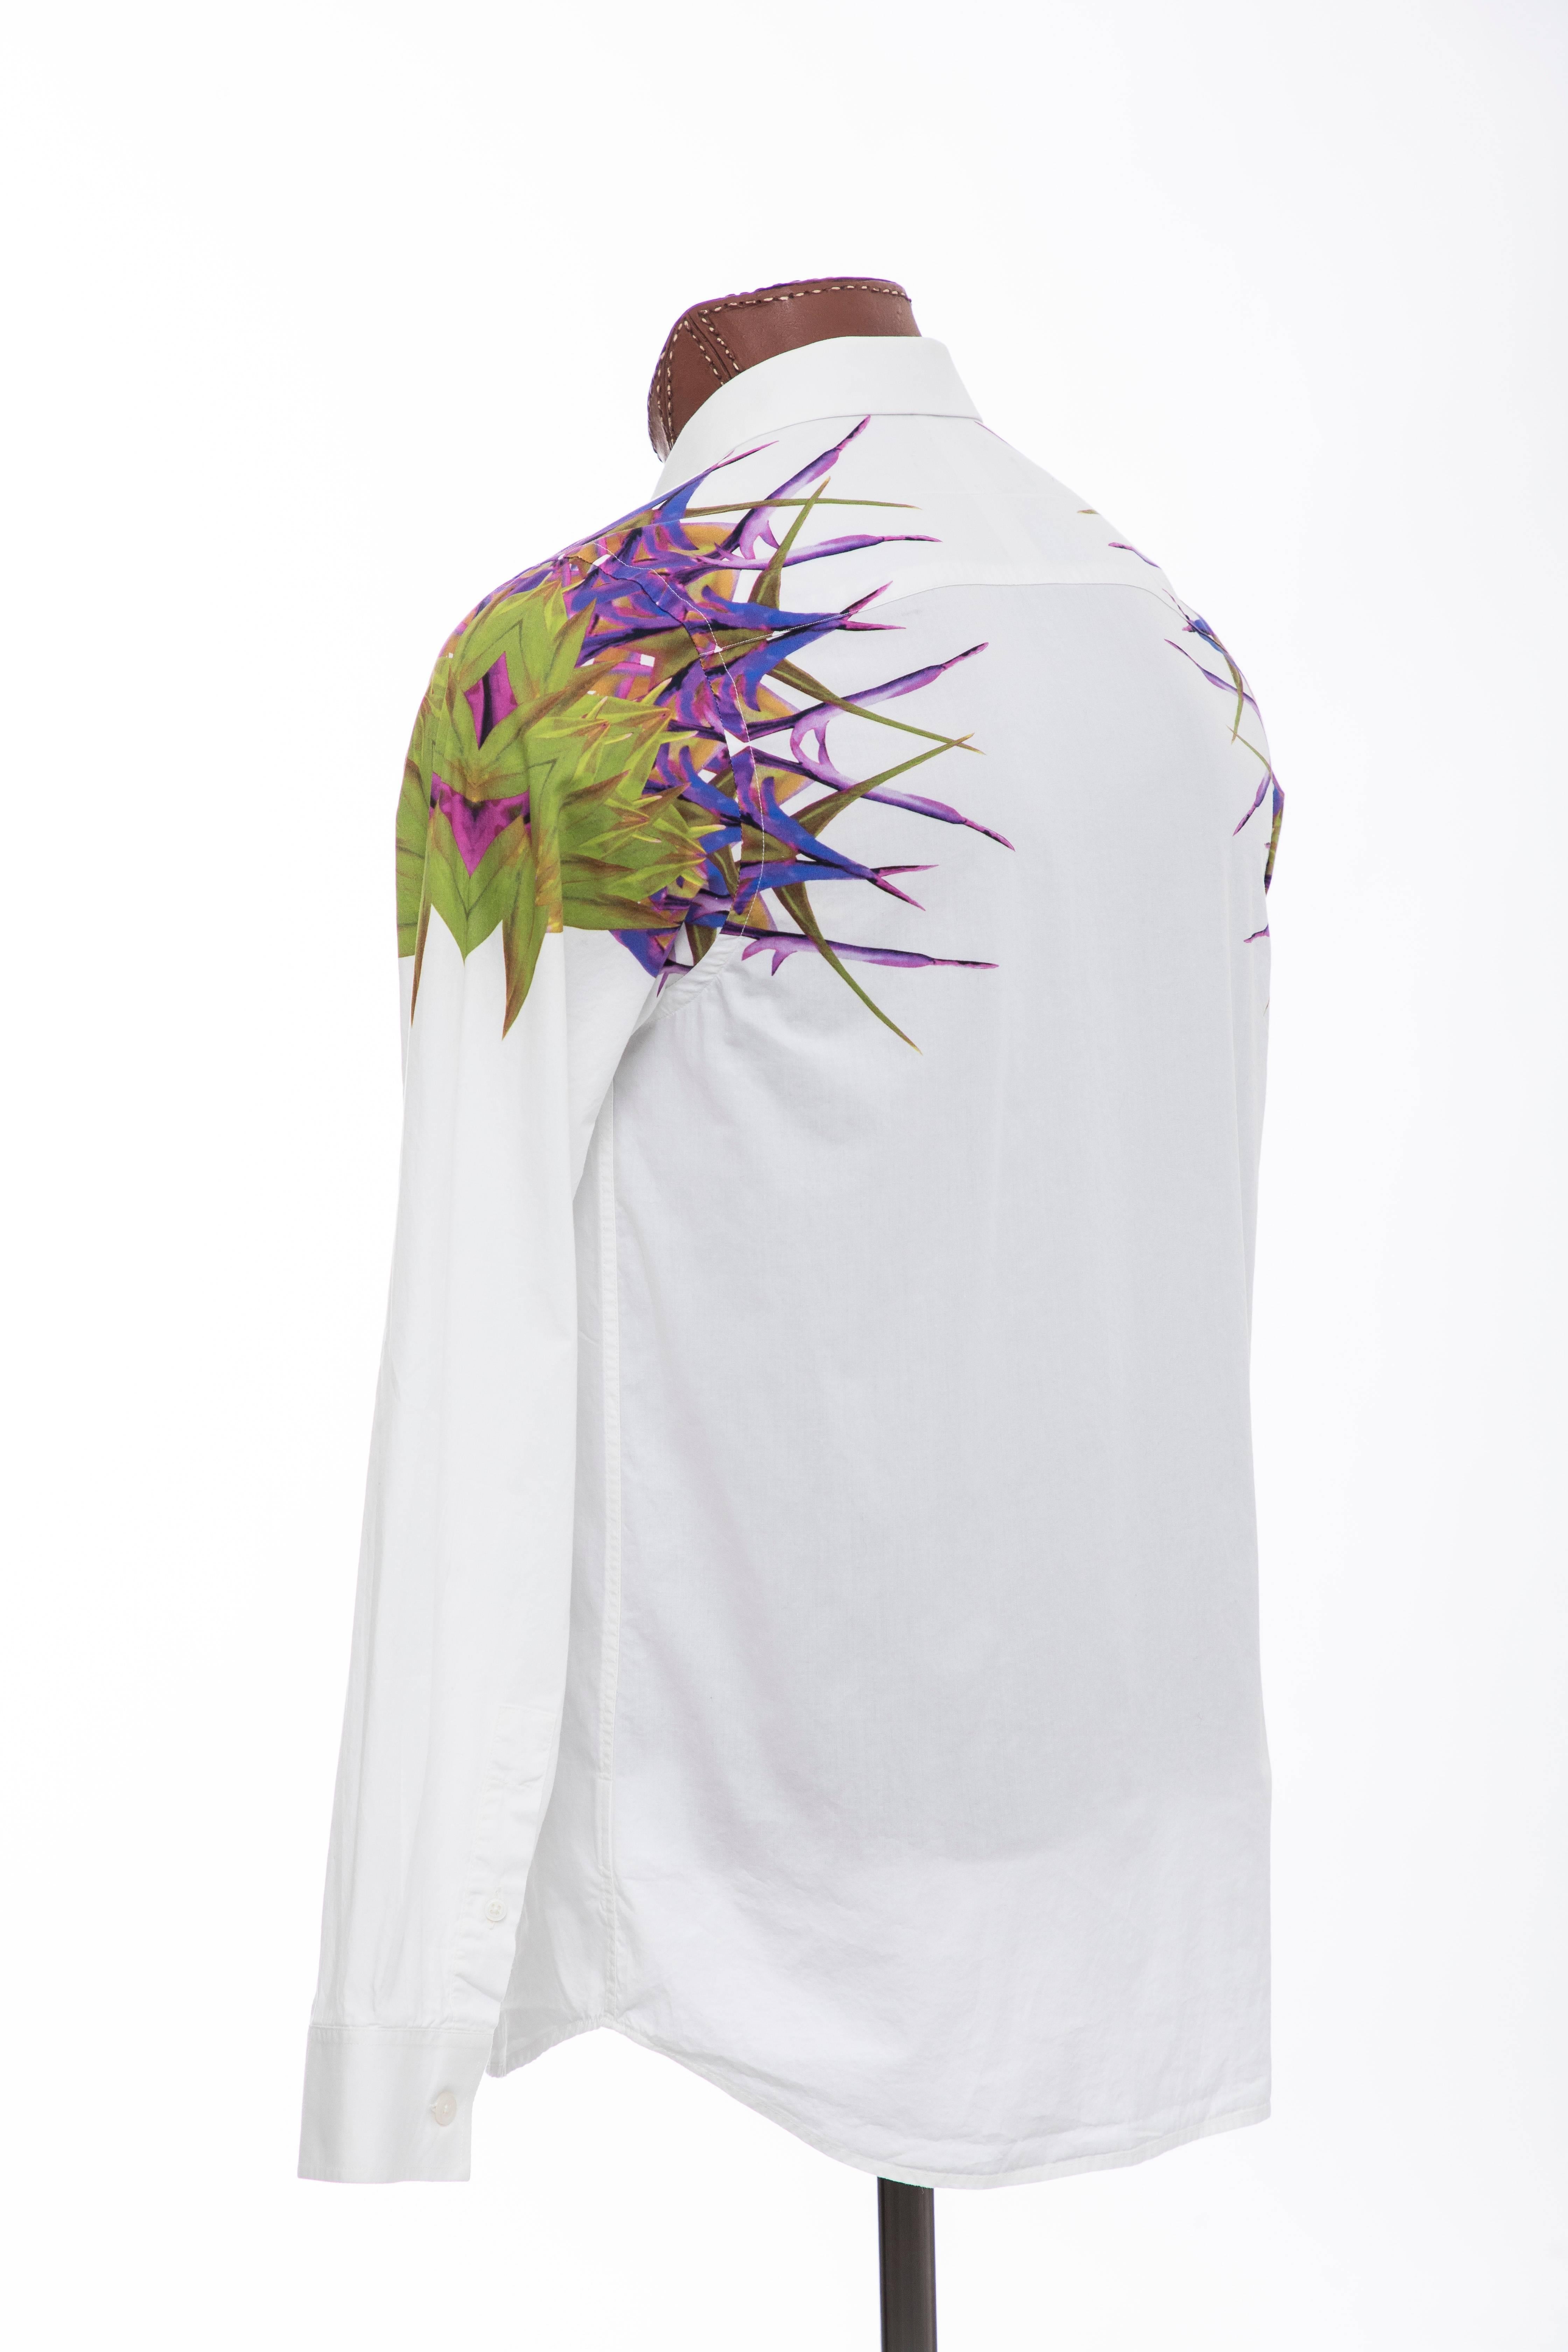 Riccardo Tisci Givenchy Men's Cotton Birds Of Paradise Shirt, Spring 2012 1